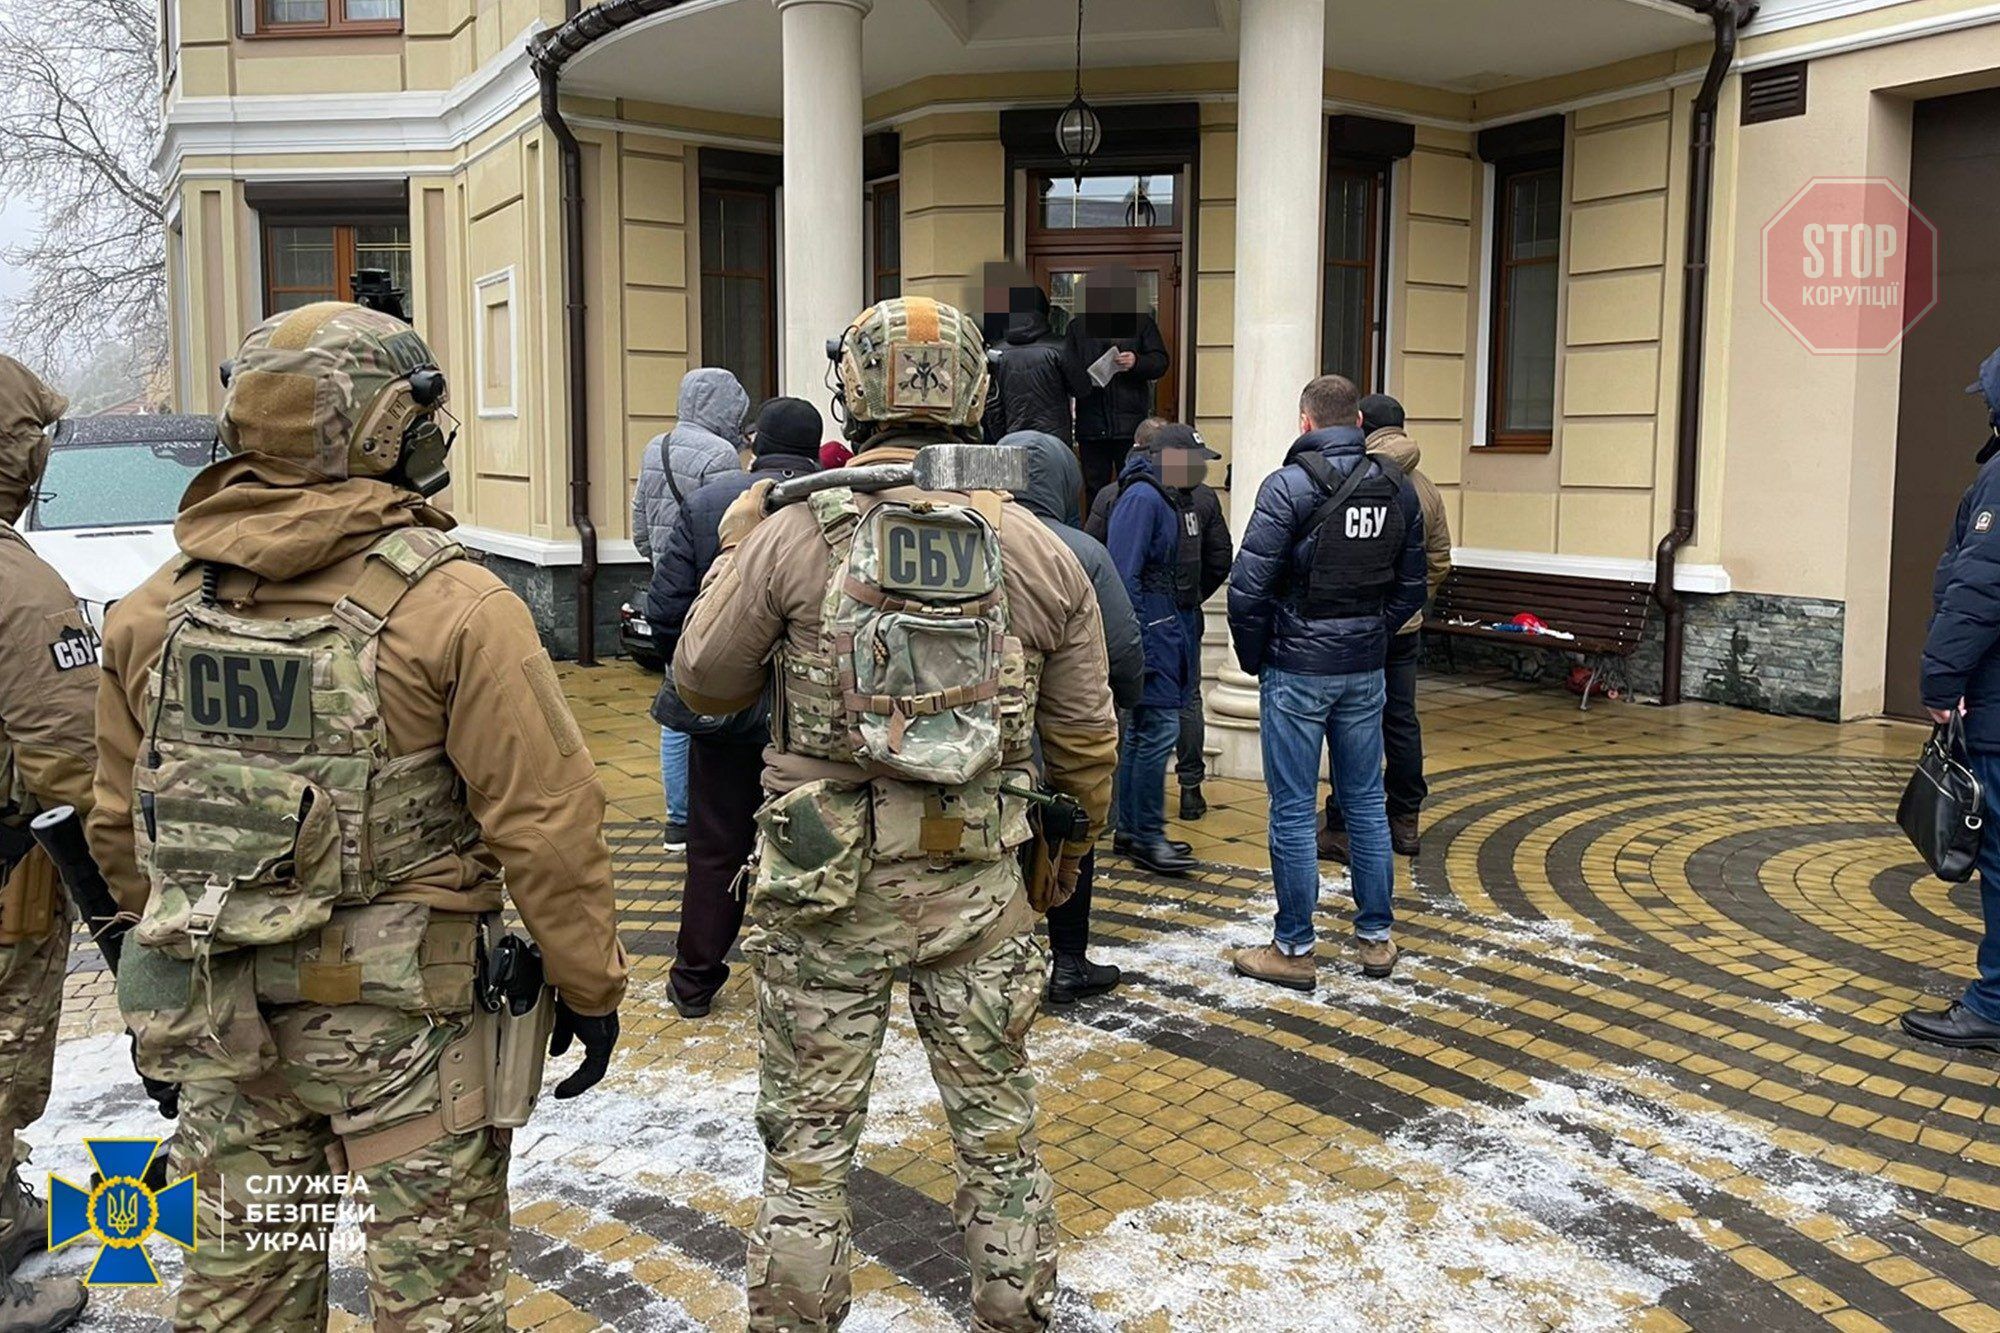  СБУ затримала чиновників за махінації з землею Фото: ssu.gov.ua